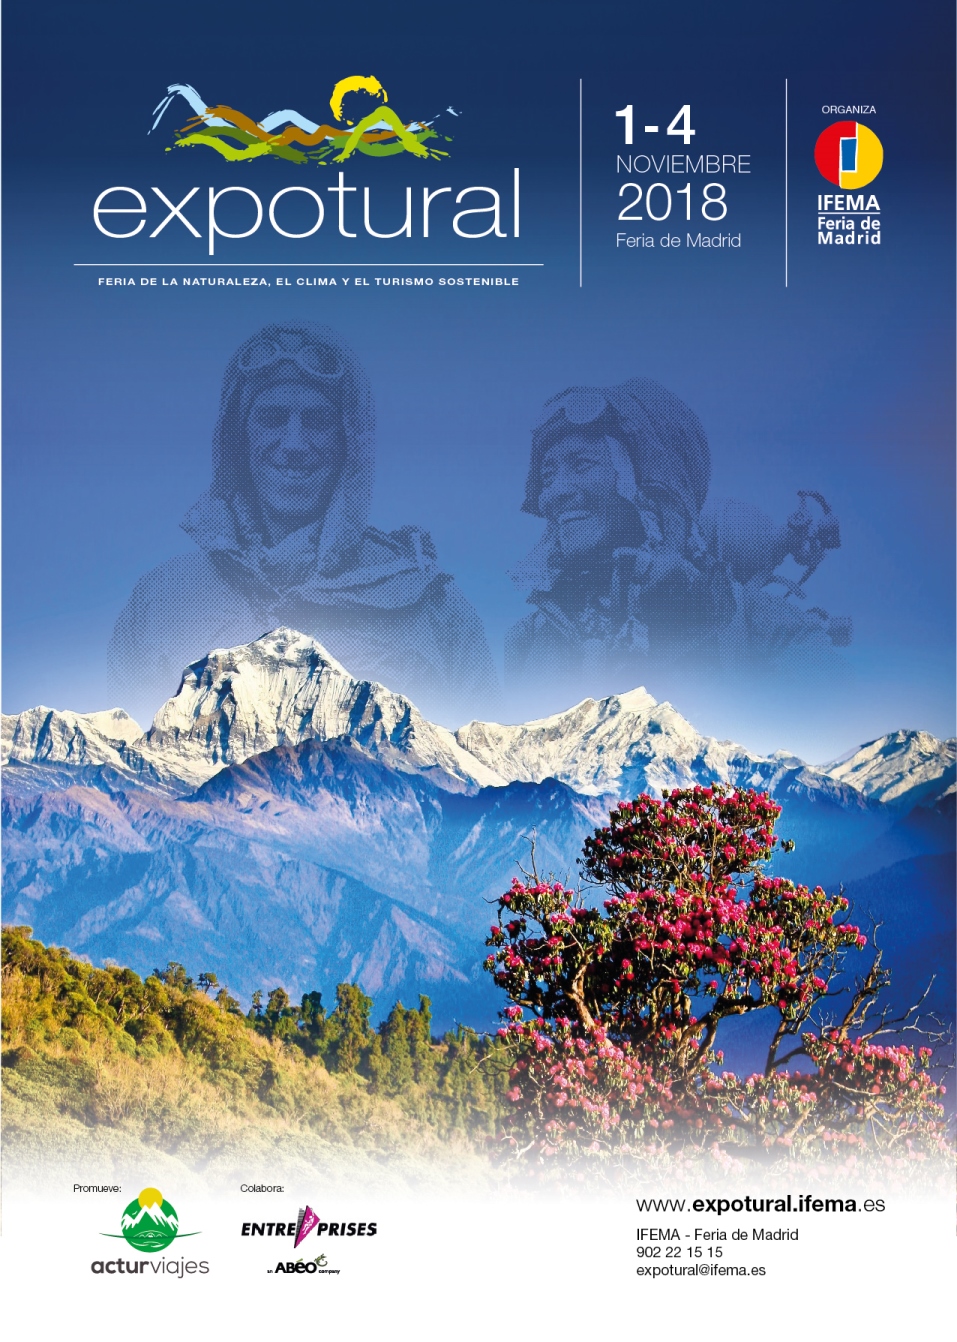 Expotural 2018, turismo de naturaleza y deportes de montaña